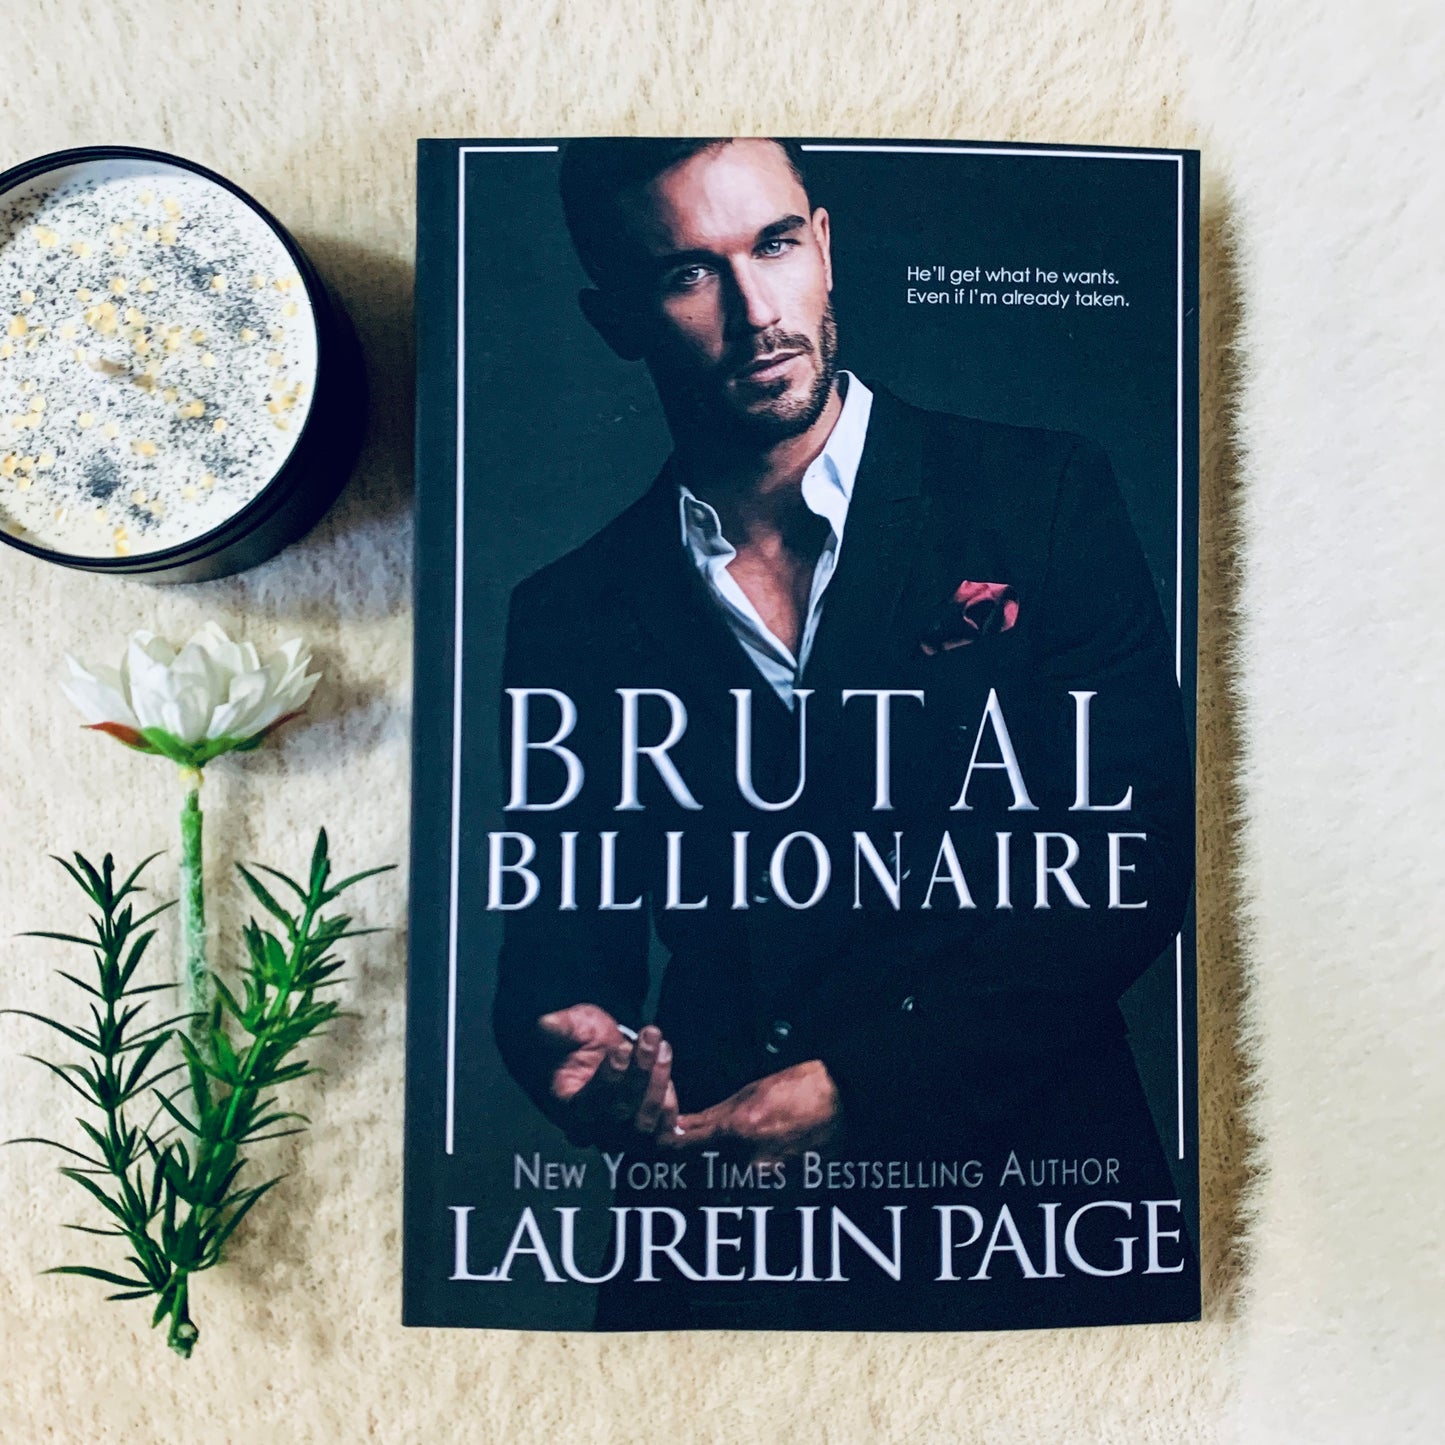 Brutal Billionaire by Laurelin Paige (imperfect copy)